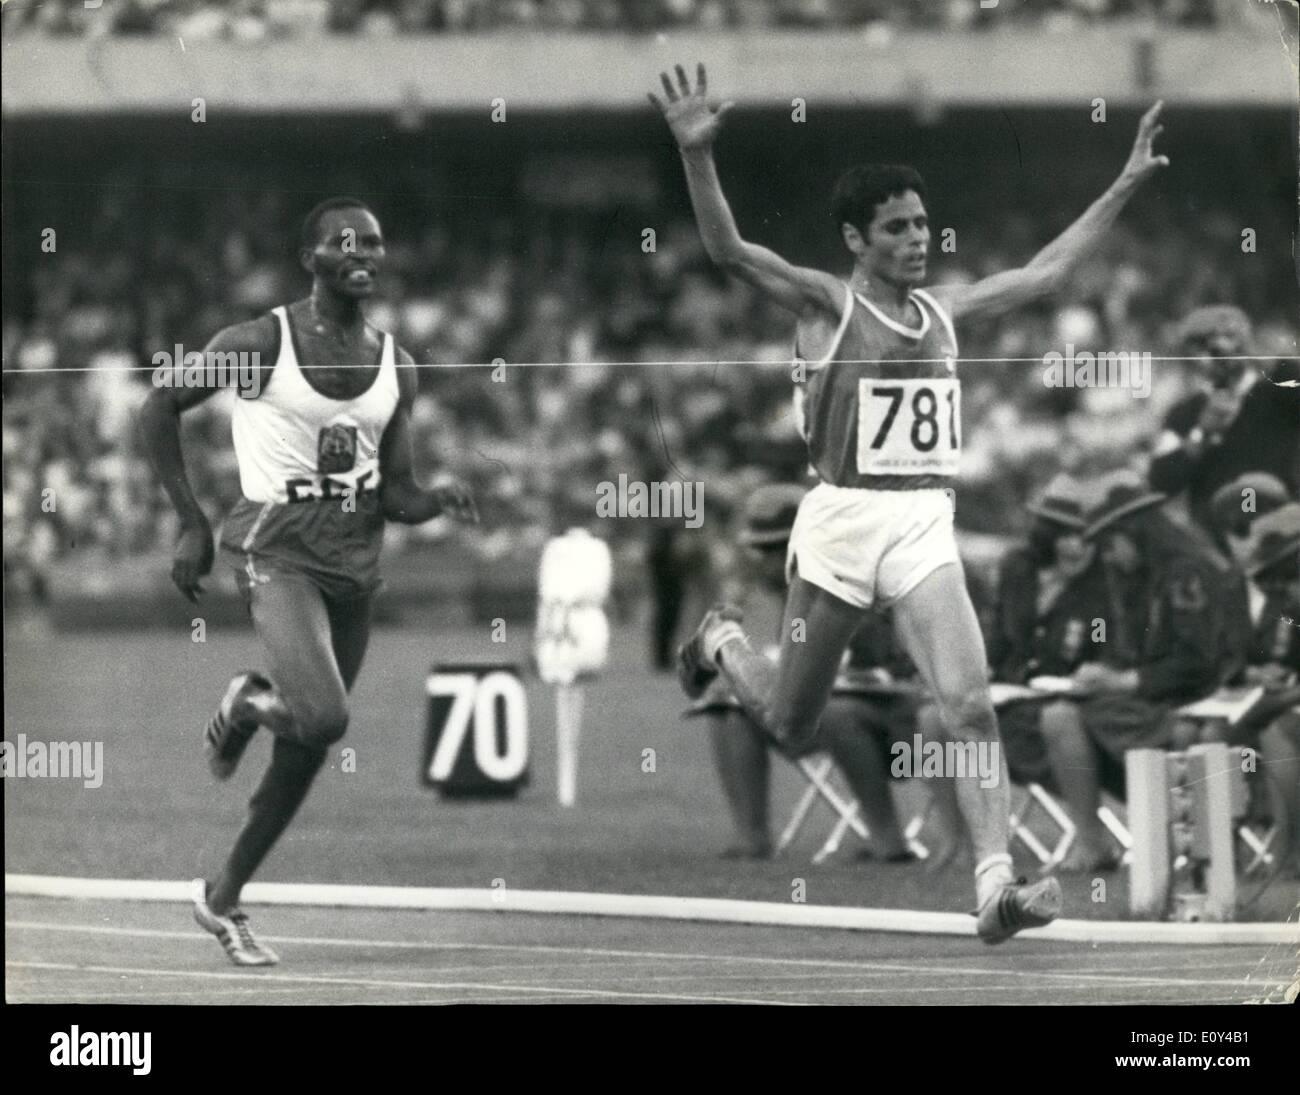 10 octobre 1968 - Le Mexique d'Olympics-Gammoudi La Tunisie remporte l'or dans la finale du 5 000 mètres. Photo montre M. Gammoudi de la Tunisie avec les bras en l'air traverse la ligne pour gagner la finale du 5 000 mètres aux Jeux Olympiques de Mexico, un deuxième étroit est H. Keino du Kenya, et le troisième a été Temu aussi de Kenya pas en photo. Banque D'Images